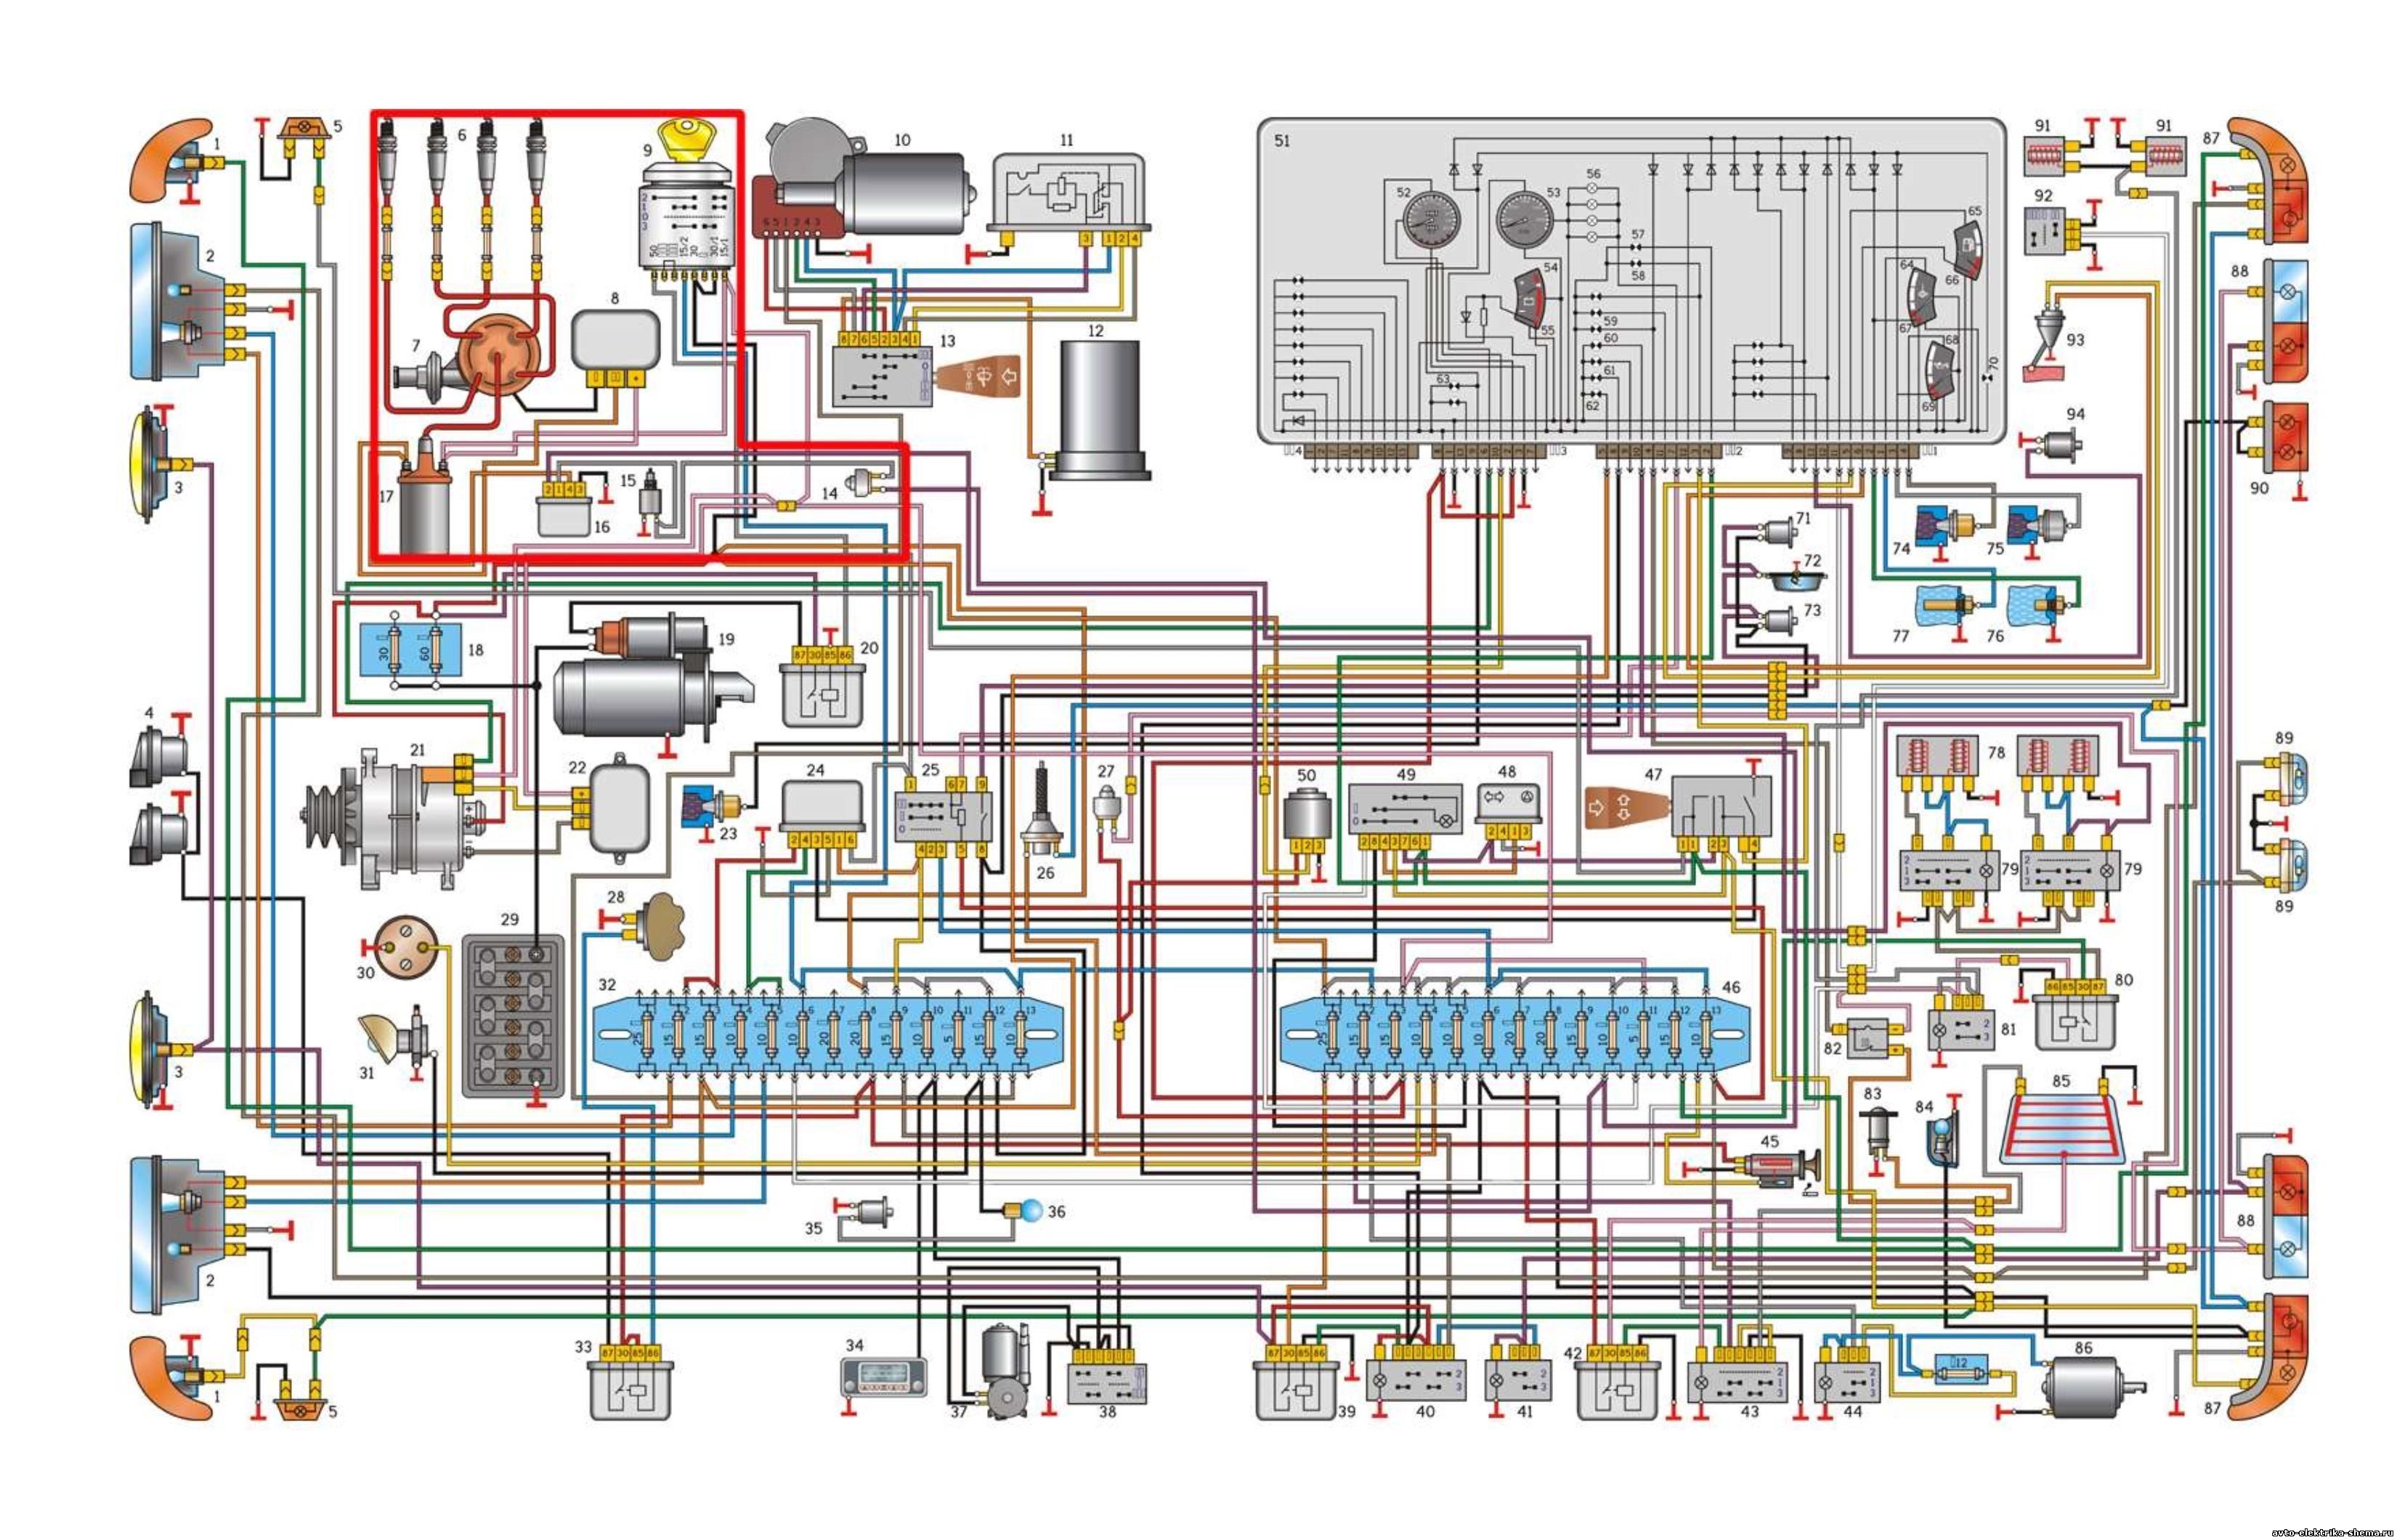 Схема электрооборудования автомобиля ГАЗ-3110 с двигателем ЗМЗ- 402